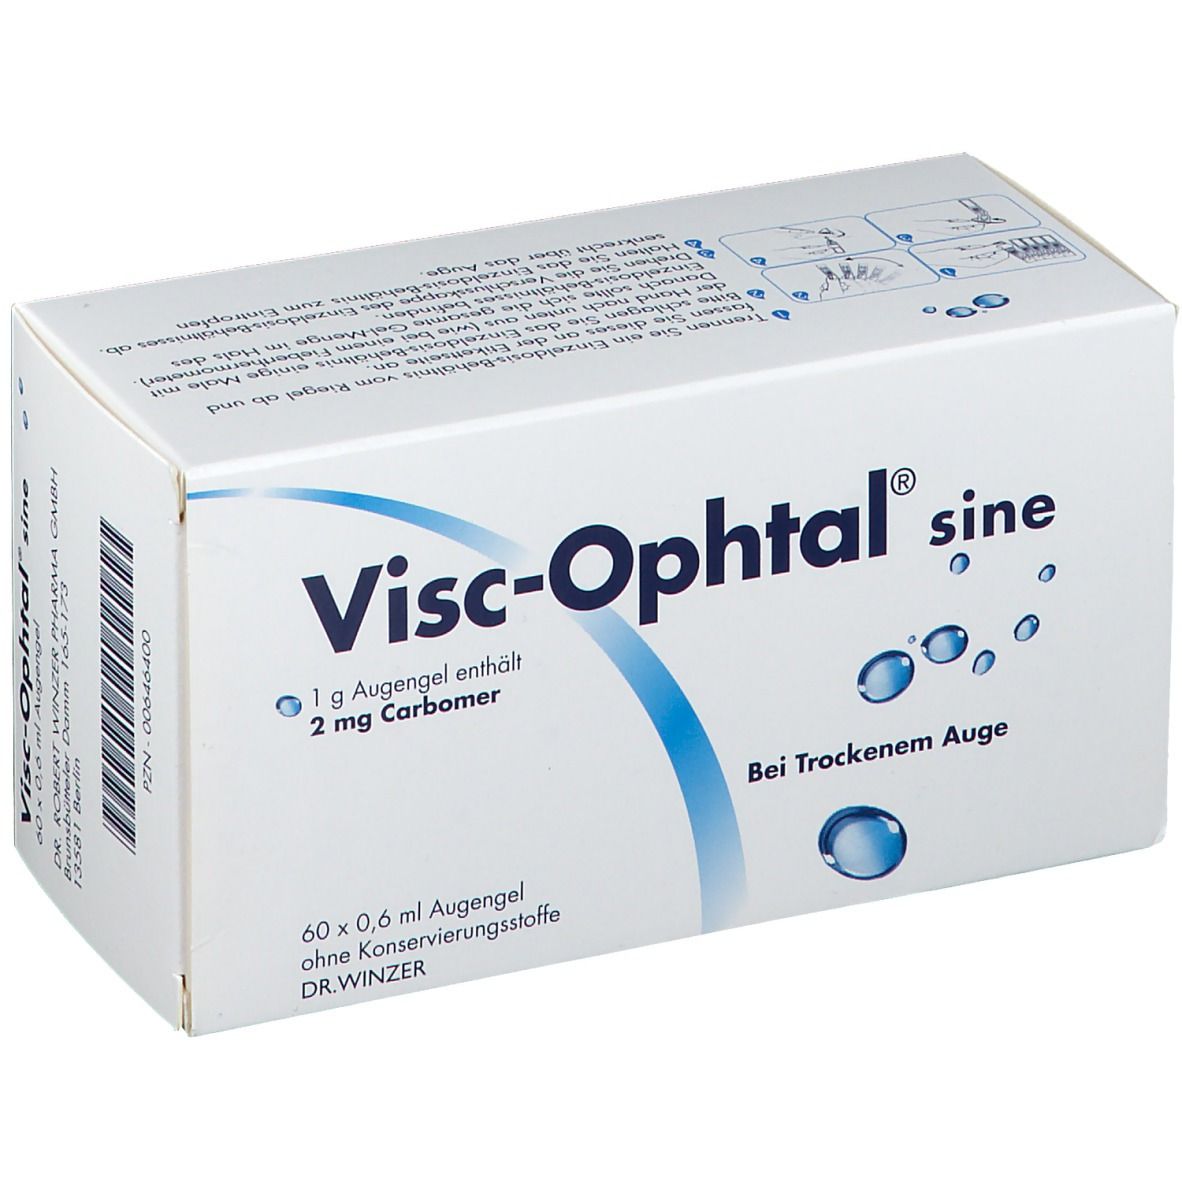 Visc-Ophtal® sine